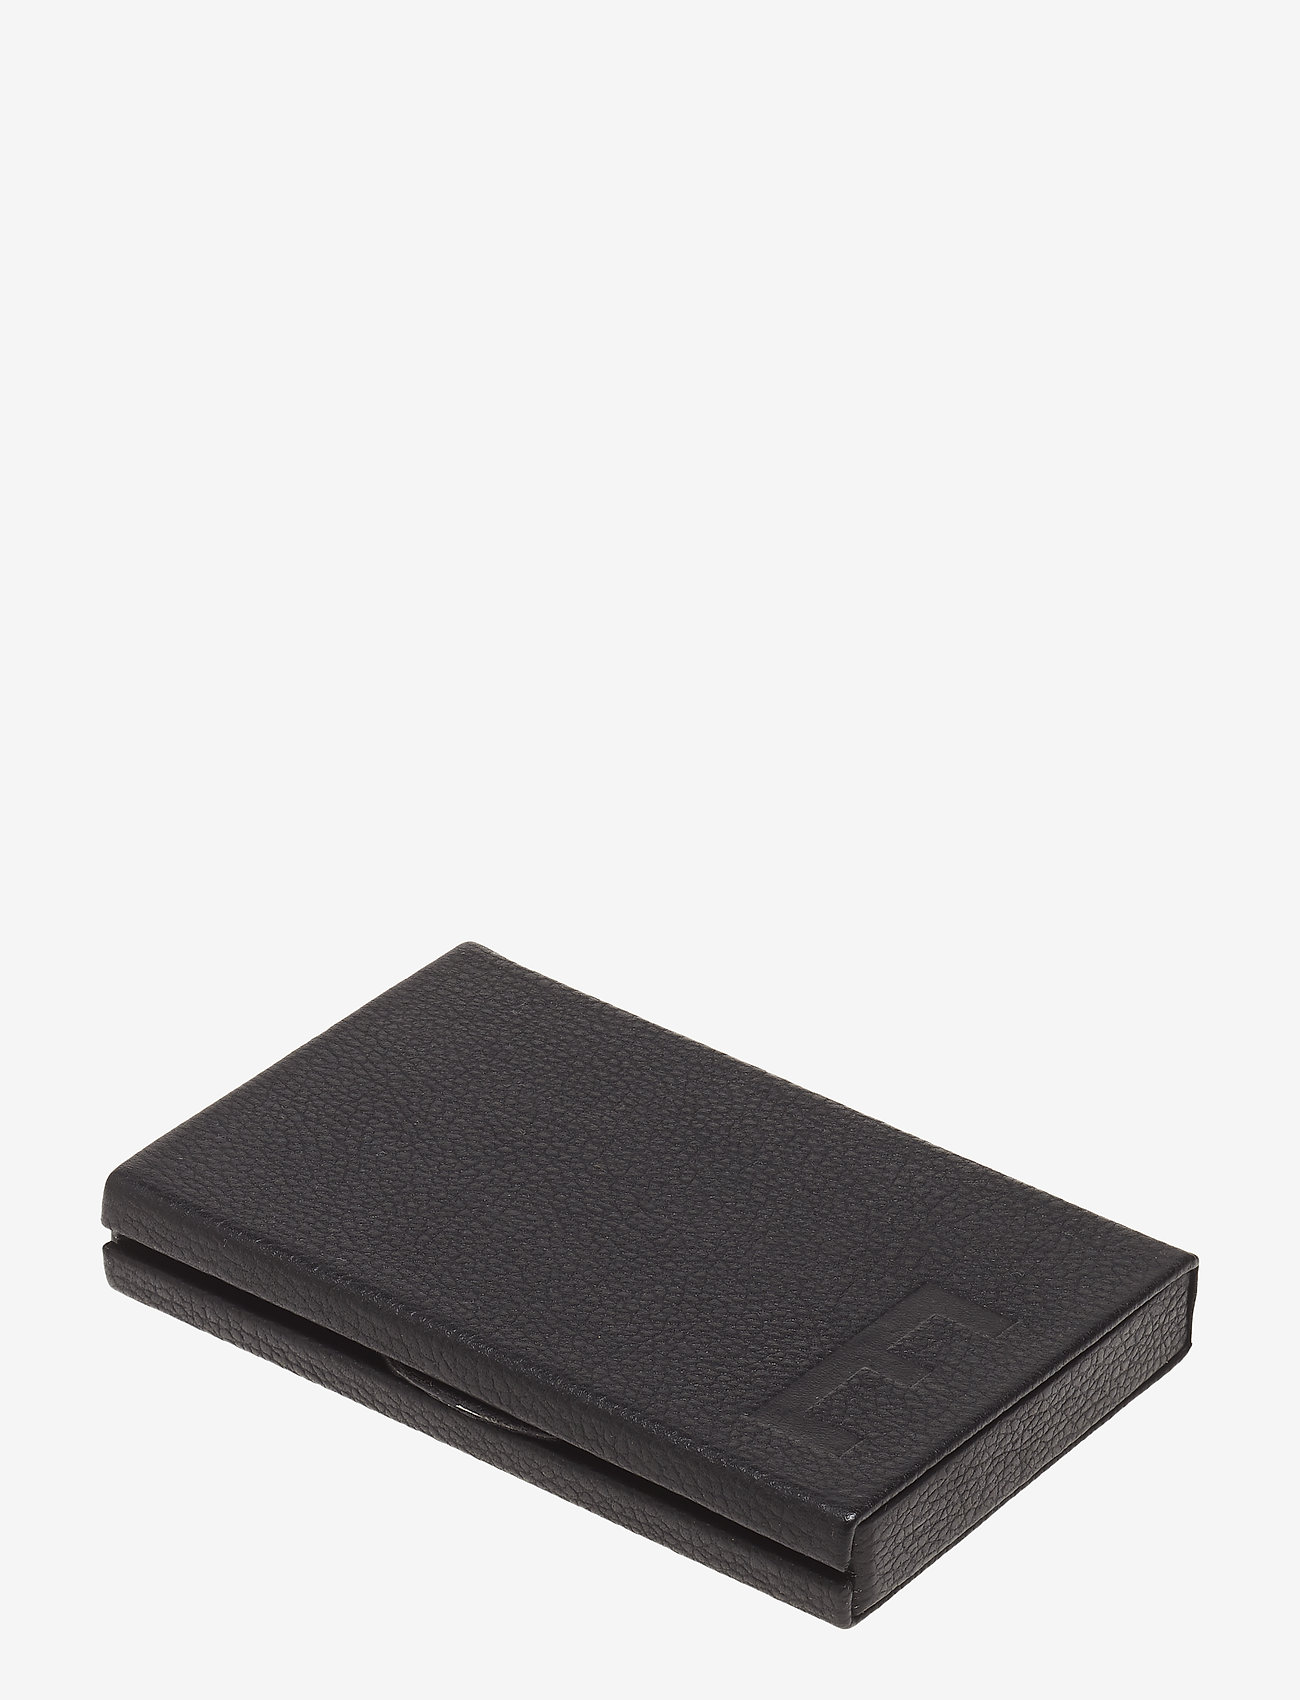 Design Letters - Personal Card holder - portemonnees - black - 0